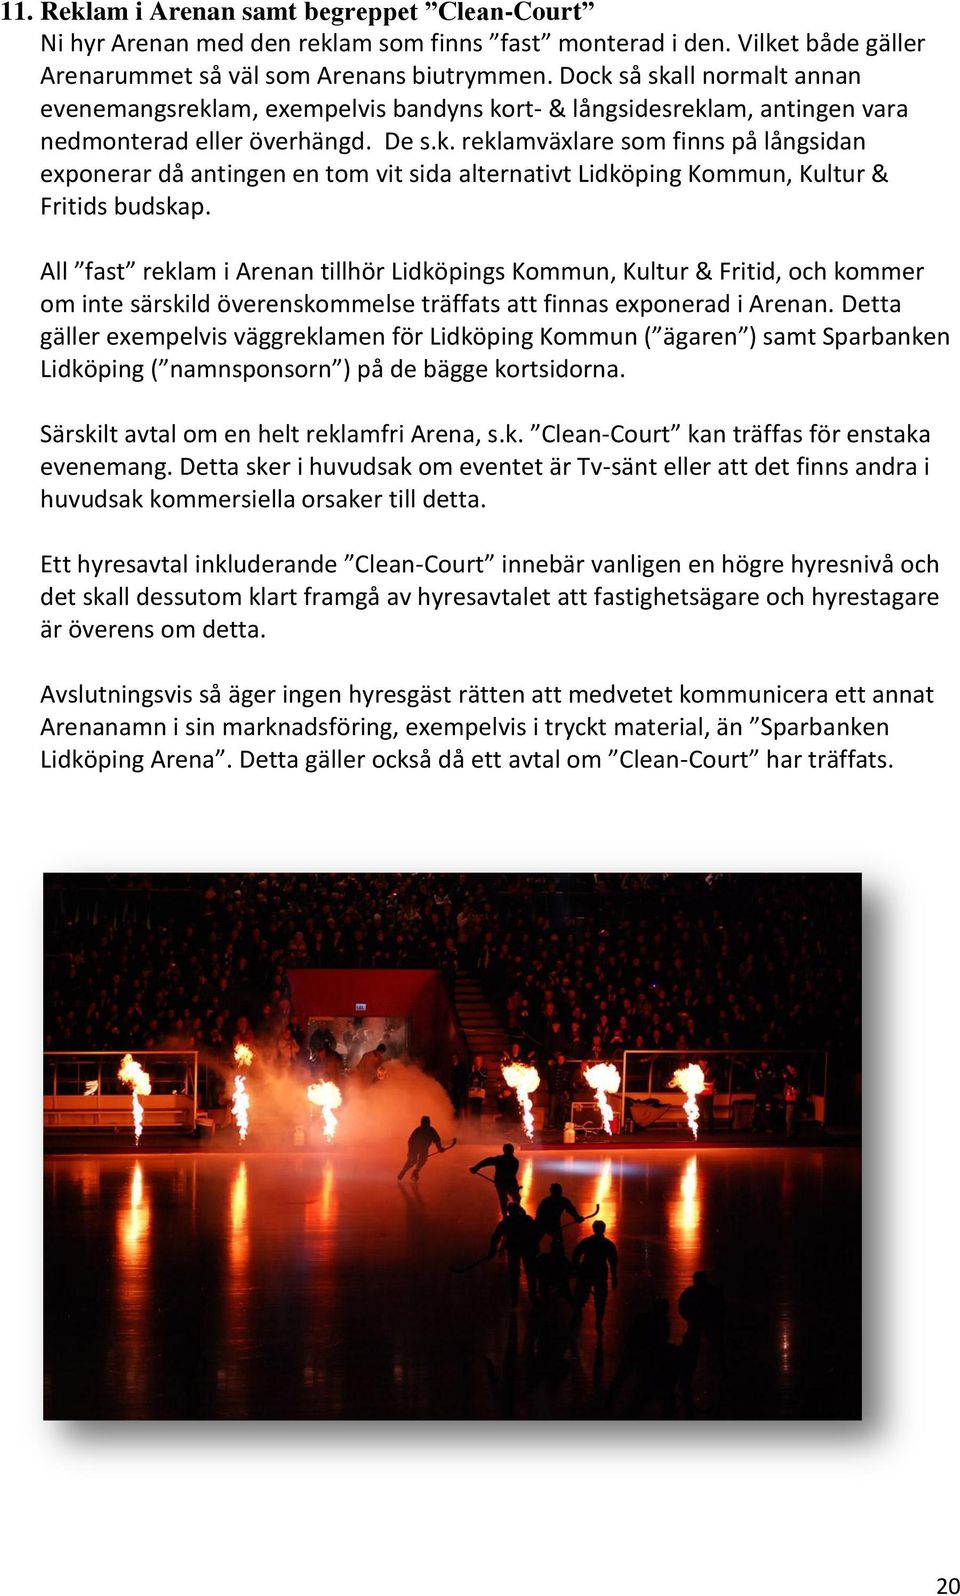 All fast reklam i Arenan tillhör Lidköpings Kommun, Kultur & Fritid, och kommer om inte särskild överenskommelse träffats att finnas exponerad i Arenan.